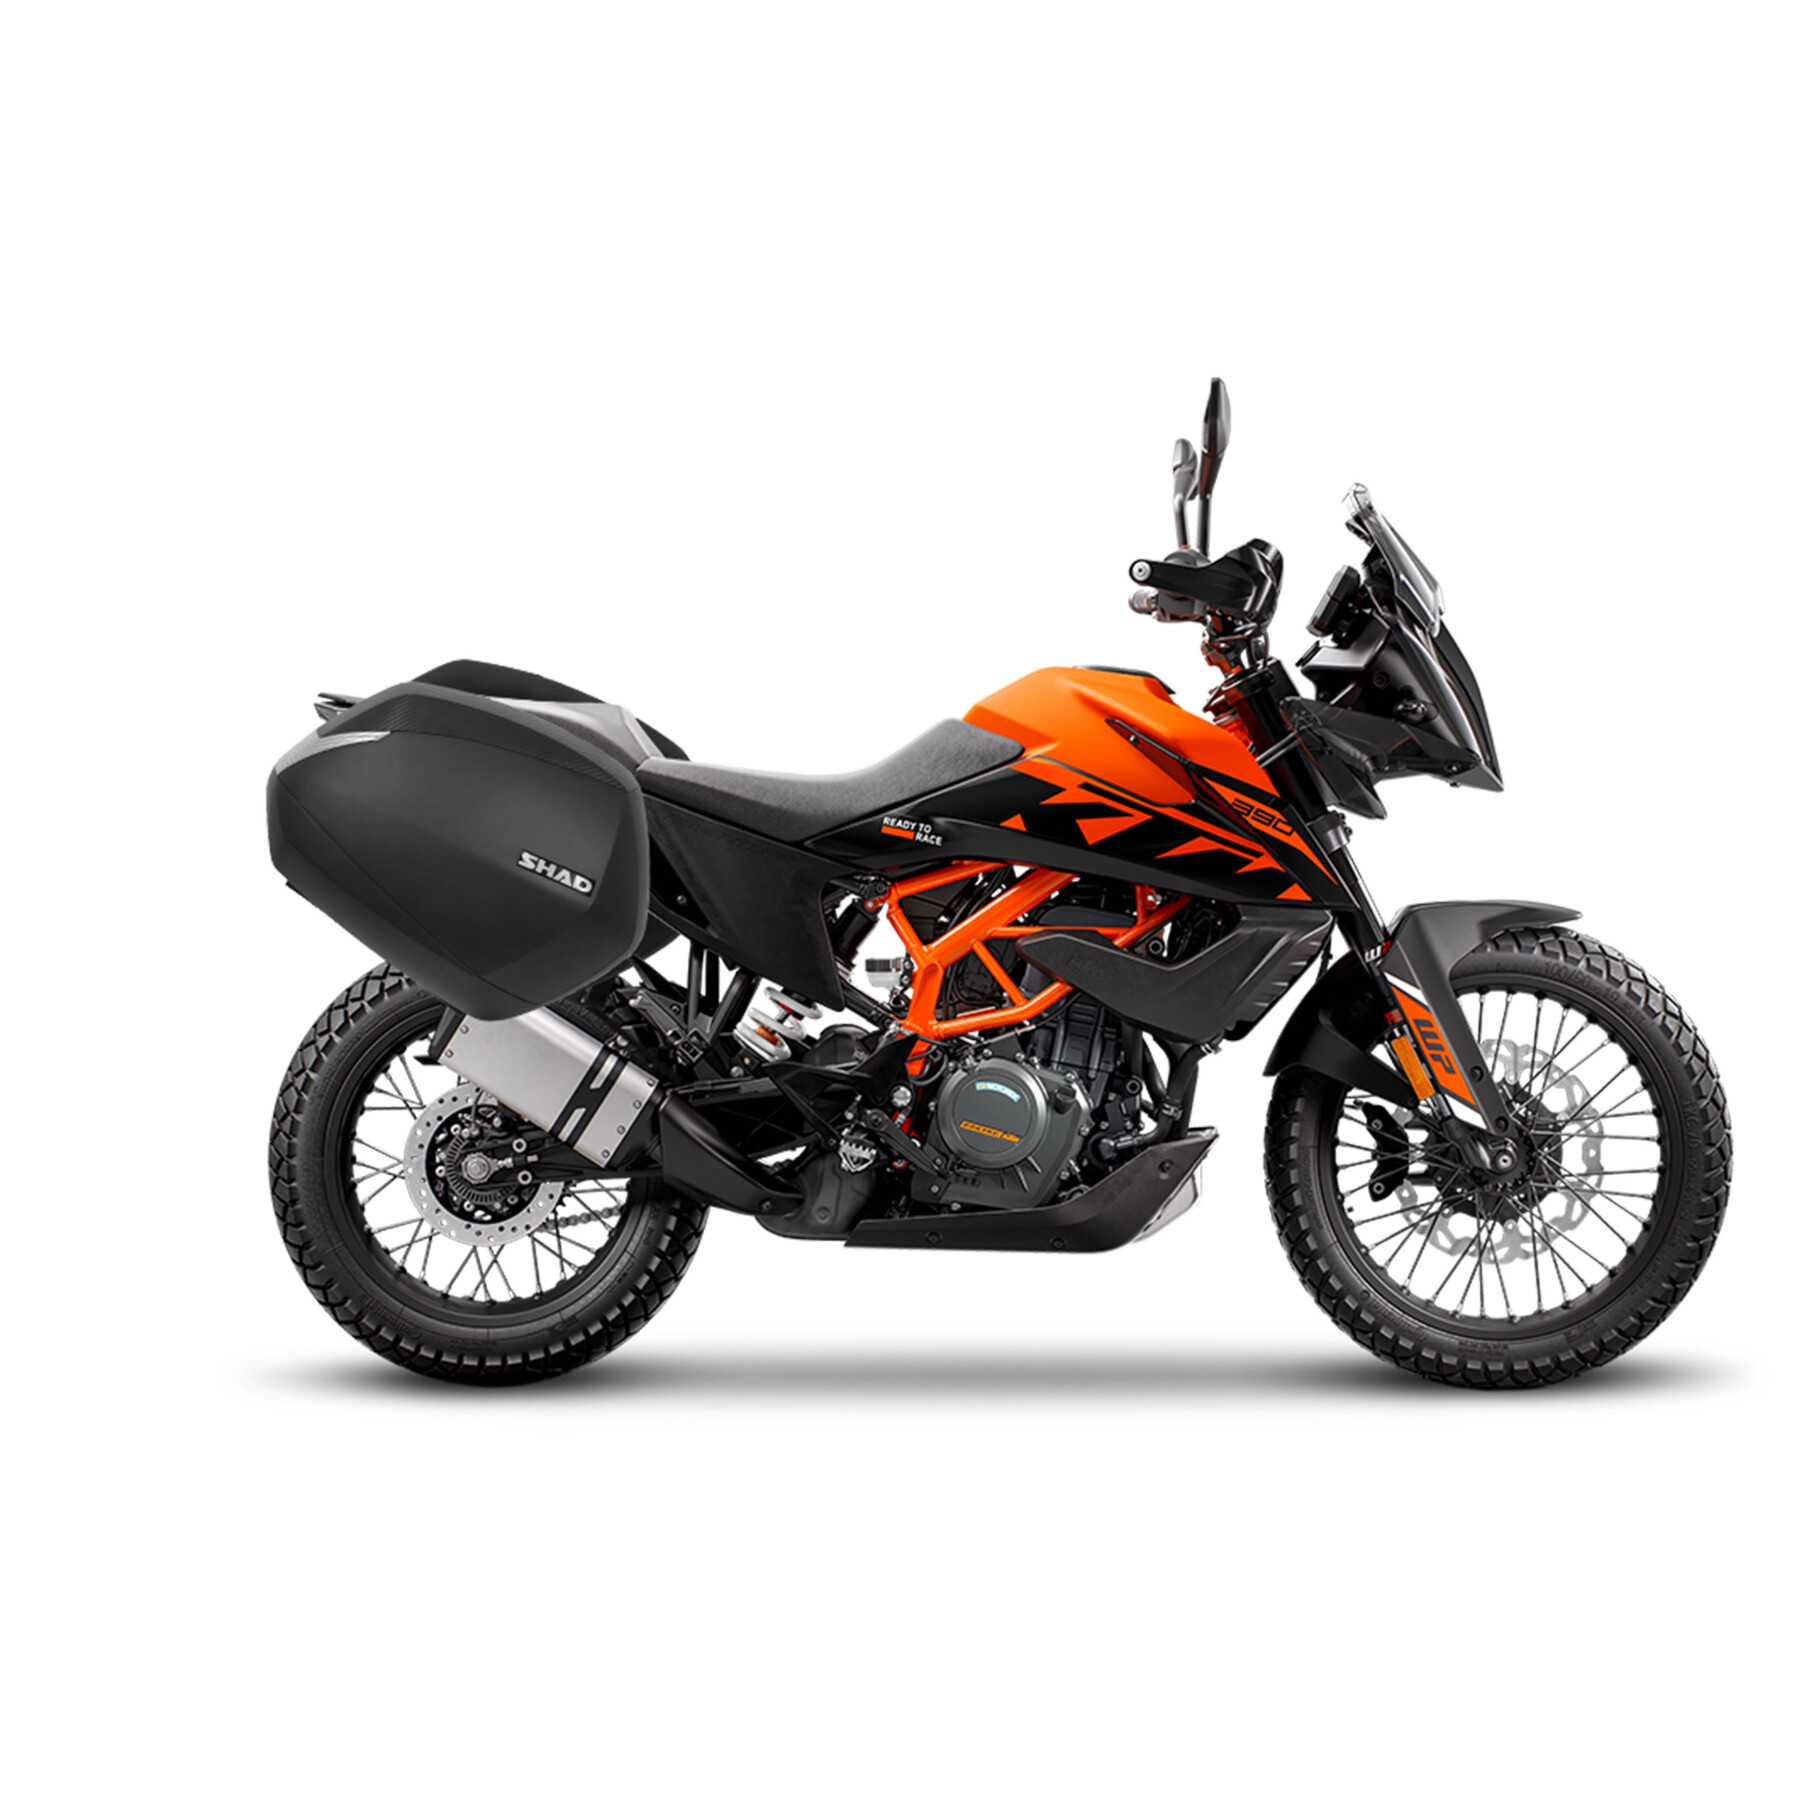 Bevestigingsset zijkoffer motorfiets Shad 3P KTM Duke Adventure 390 '20-22